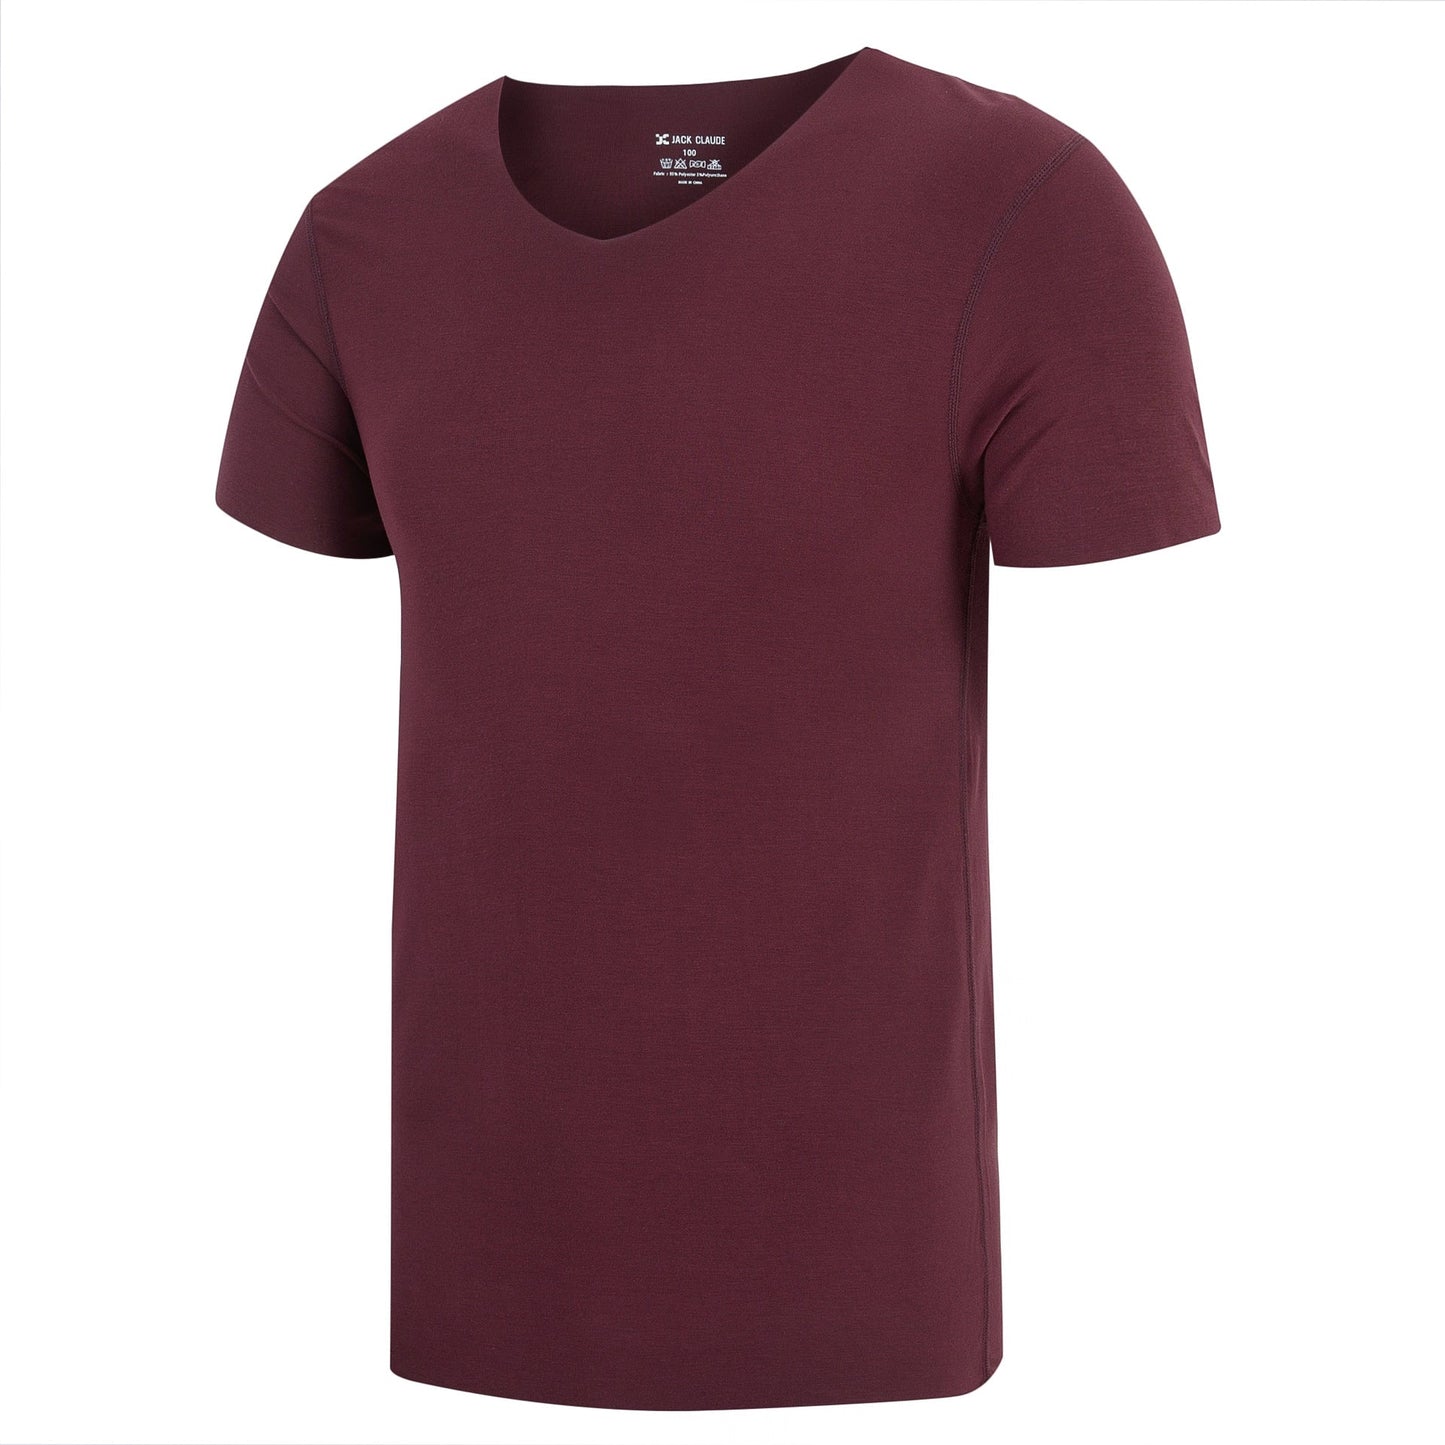 Half-Sleeved Solid Color Plain T-Shirt | GlamzLife